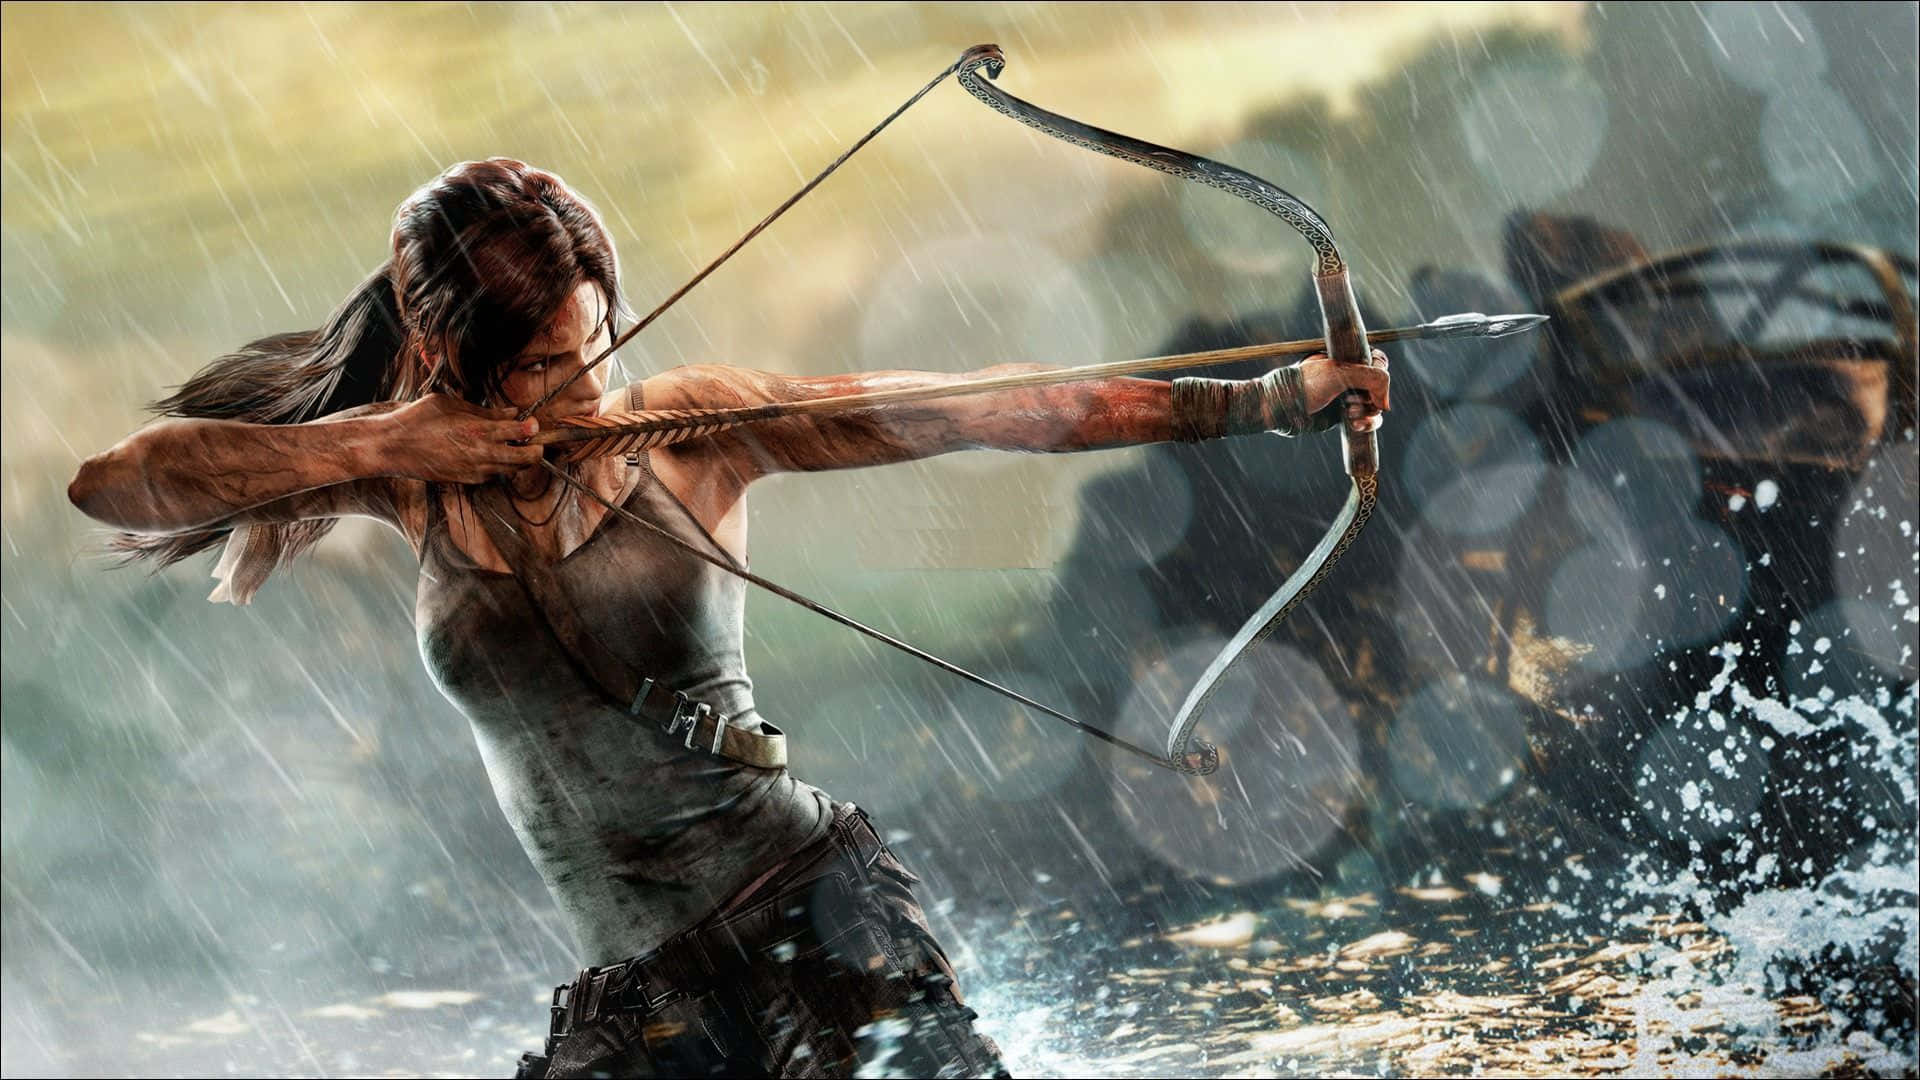 Einefrau Zielt Mit Einem Bogen Im Regen. Wallpaper